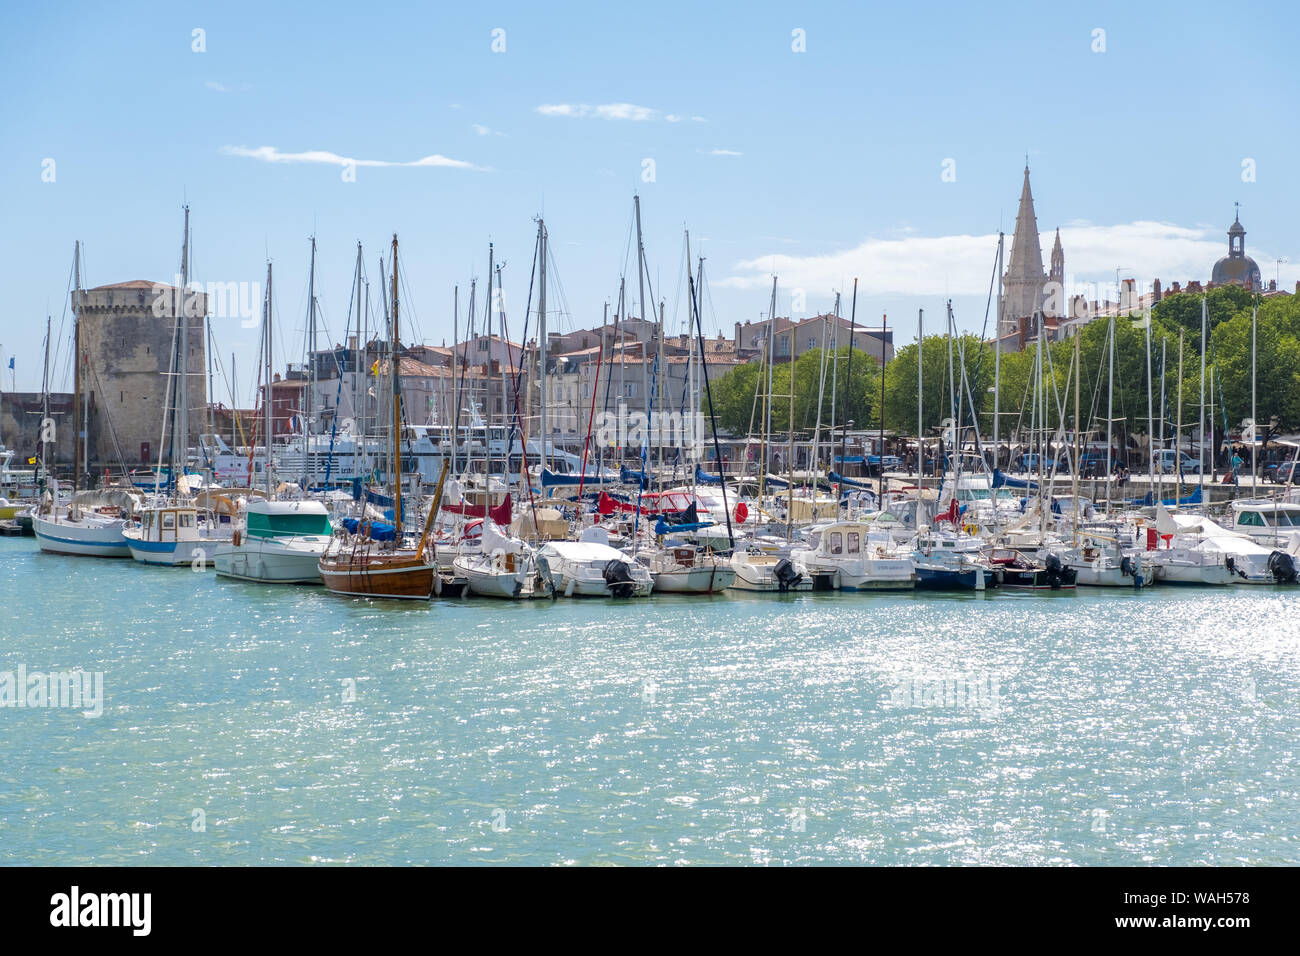 La Rochelle, Francia - 08 Maggio, 2019: una vista del porto di vieux port de La Rochelle in Francia Foto Stock